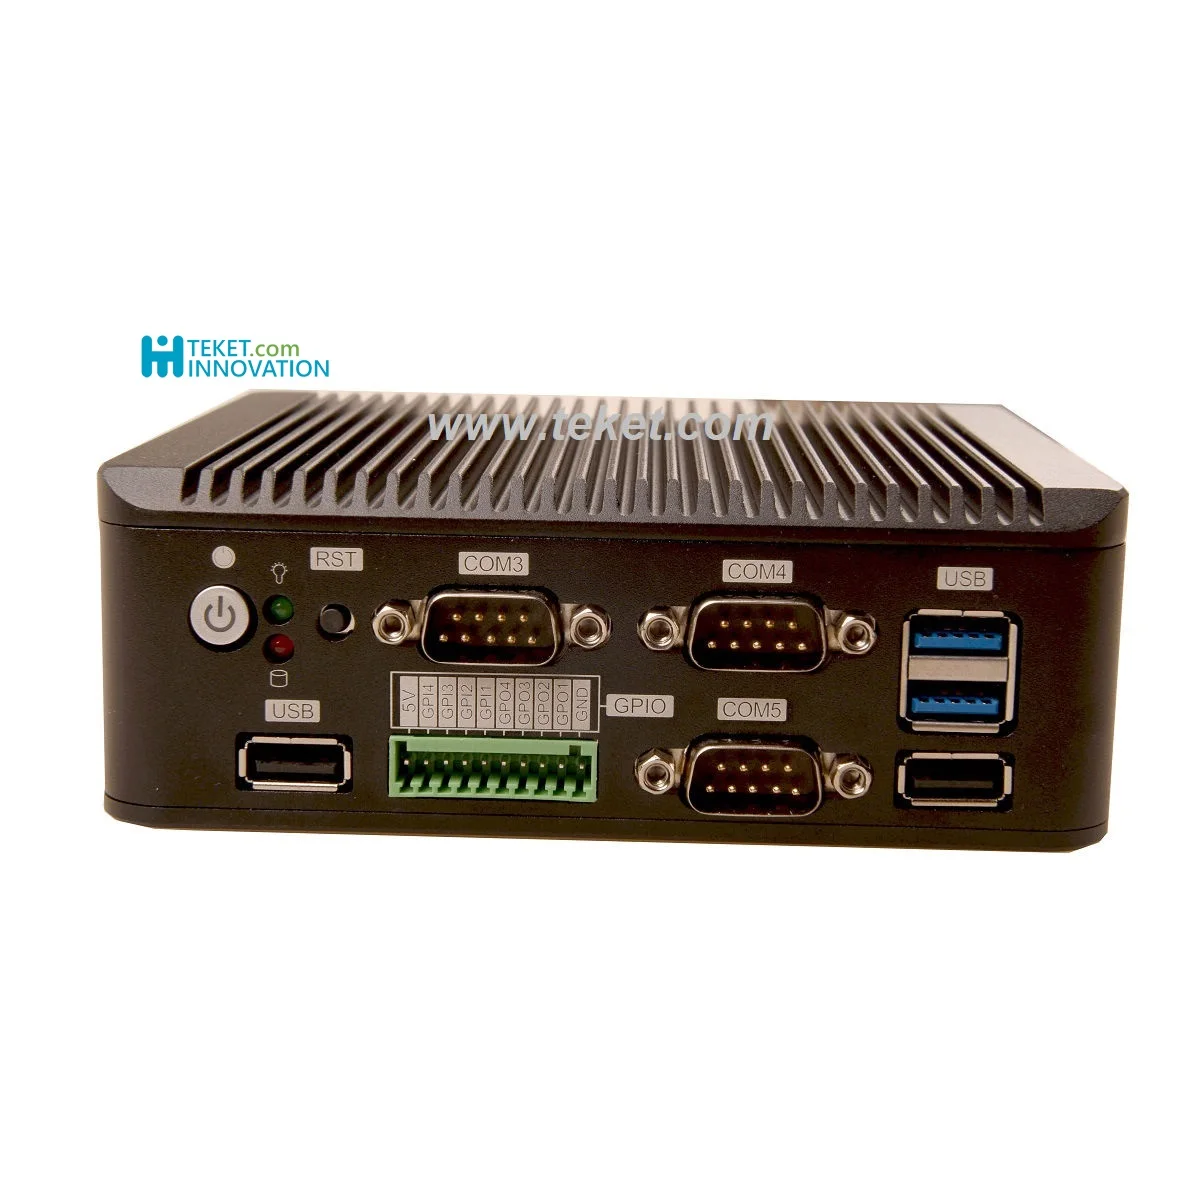 mini industrial pc Intel core Gemini Lake CPU onboard N4100 J4105 J4125  Dual LAN eMMC embedded LVDS RS485 GPIO fanless TEKET (1600469080899)